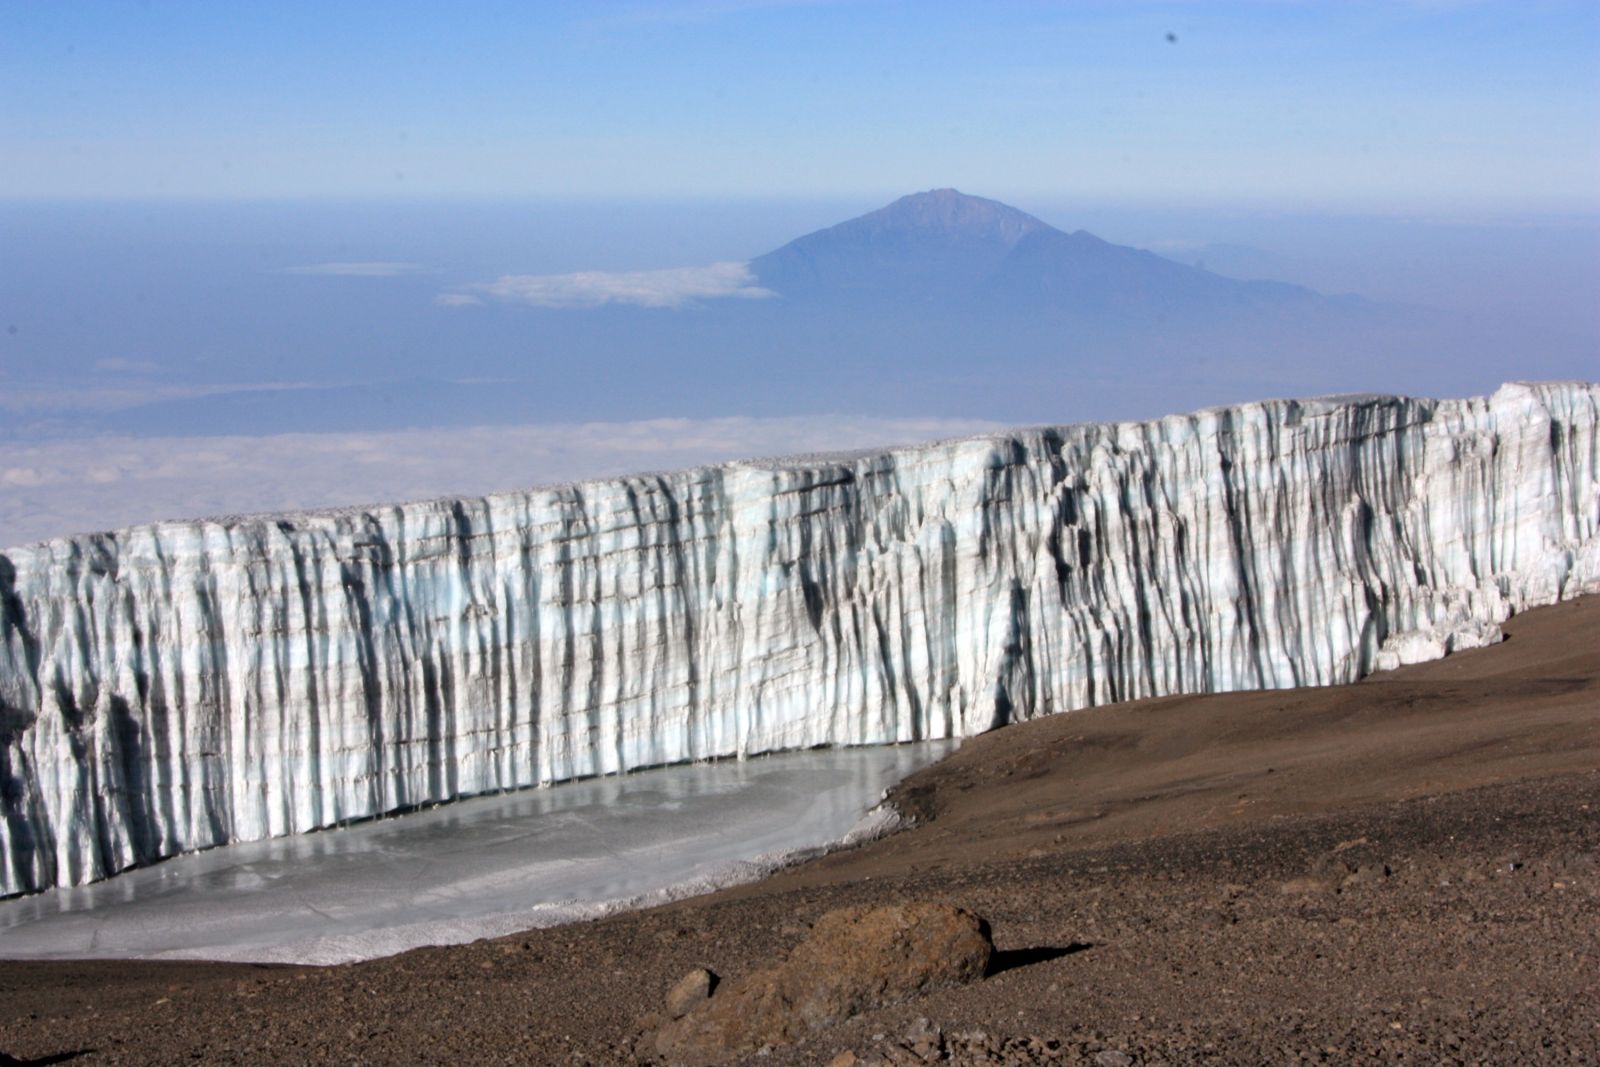 Schon weit oben: Vor uns liegt der Kersten Gletscher, im Hintergrund der Mt. Meru.